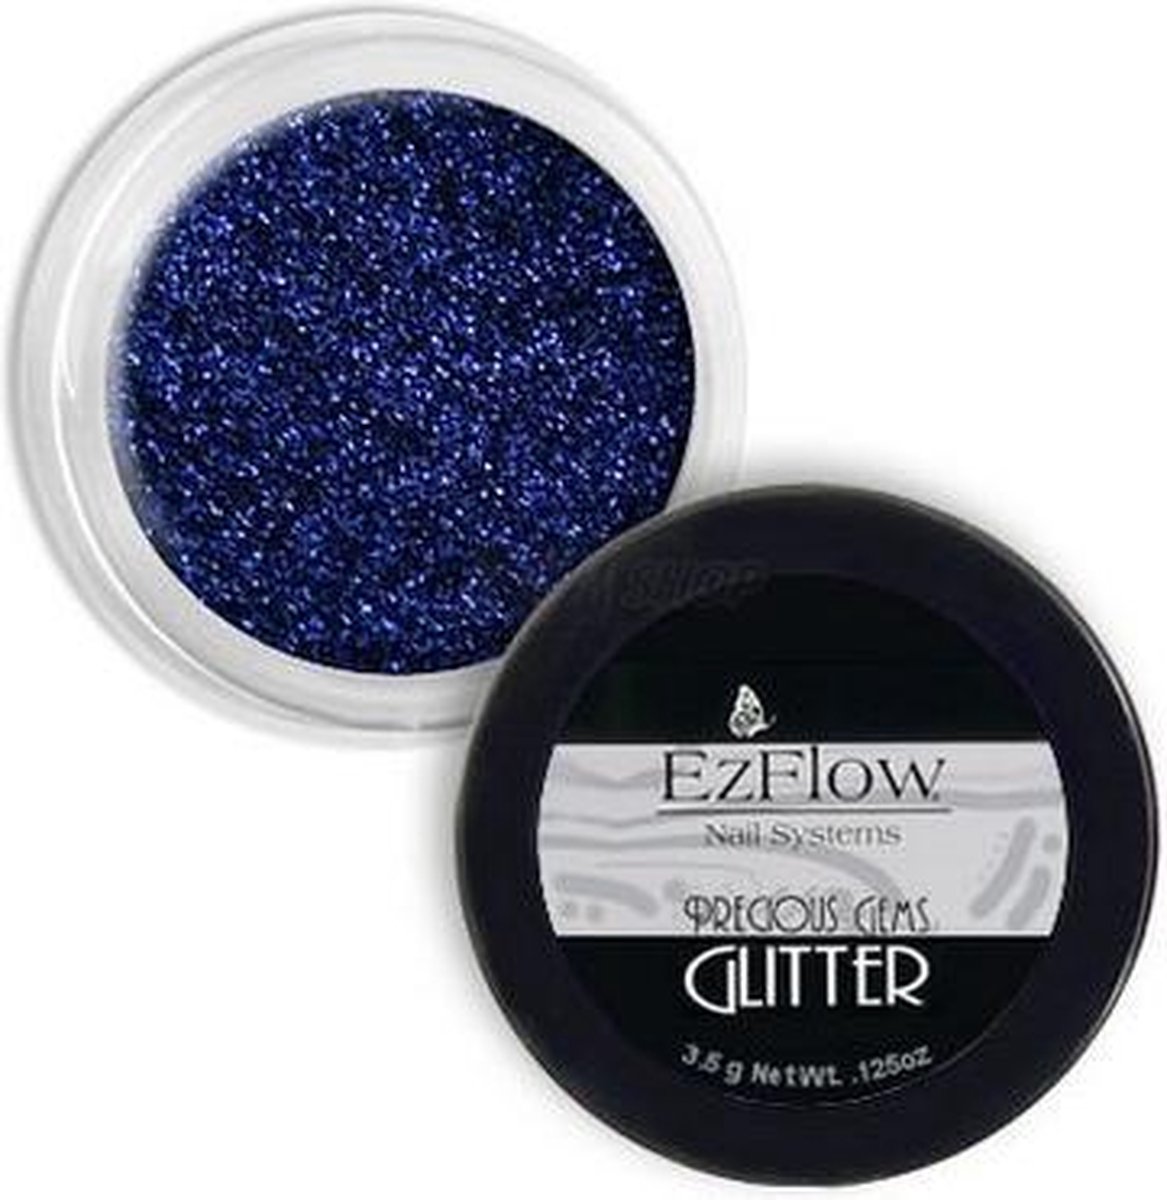 EzFlow Precious Gems Glitter - Sapphire - 0.125oz / 3.5g by EzFlow